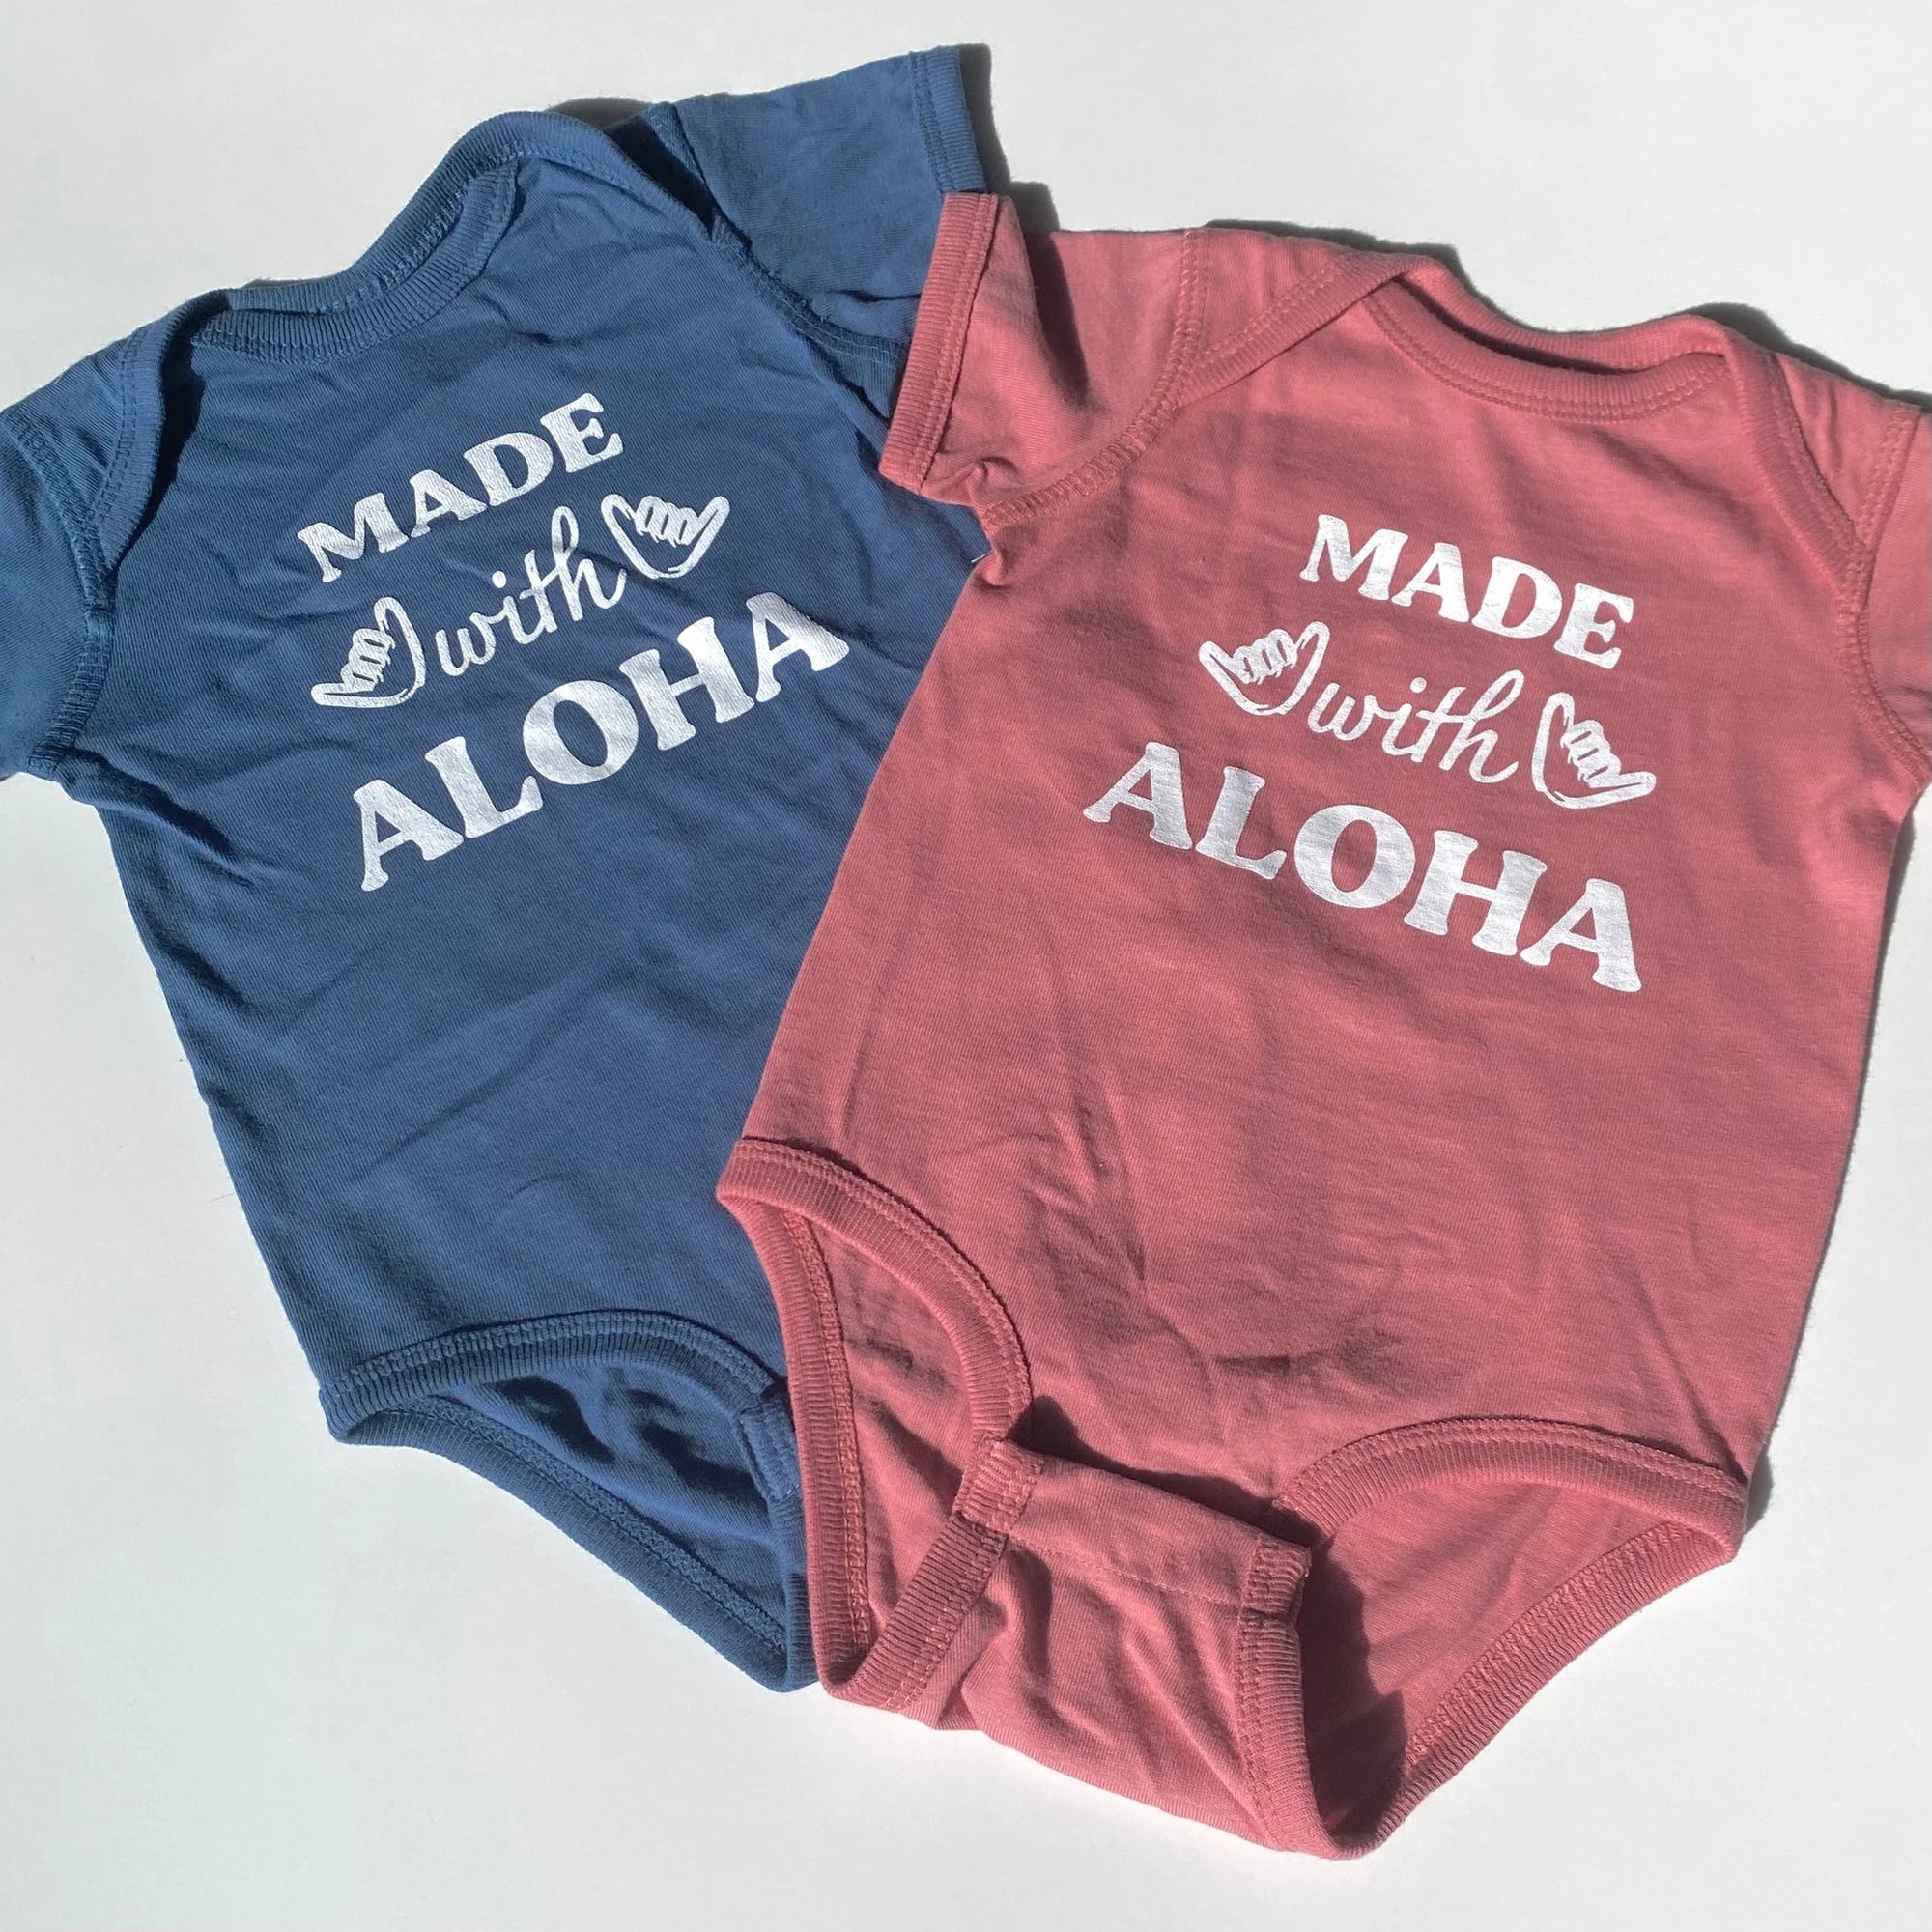 Pop-Up Mākeke - Honolulu Baby Co. - Made With Aloha Baby Onesie - Indigo